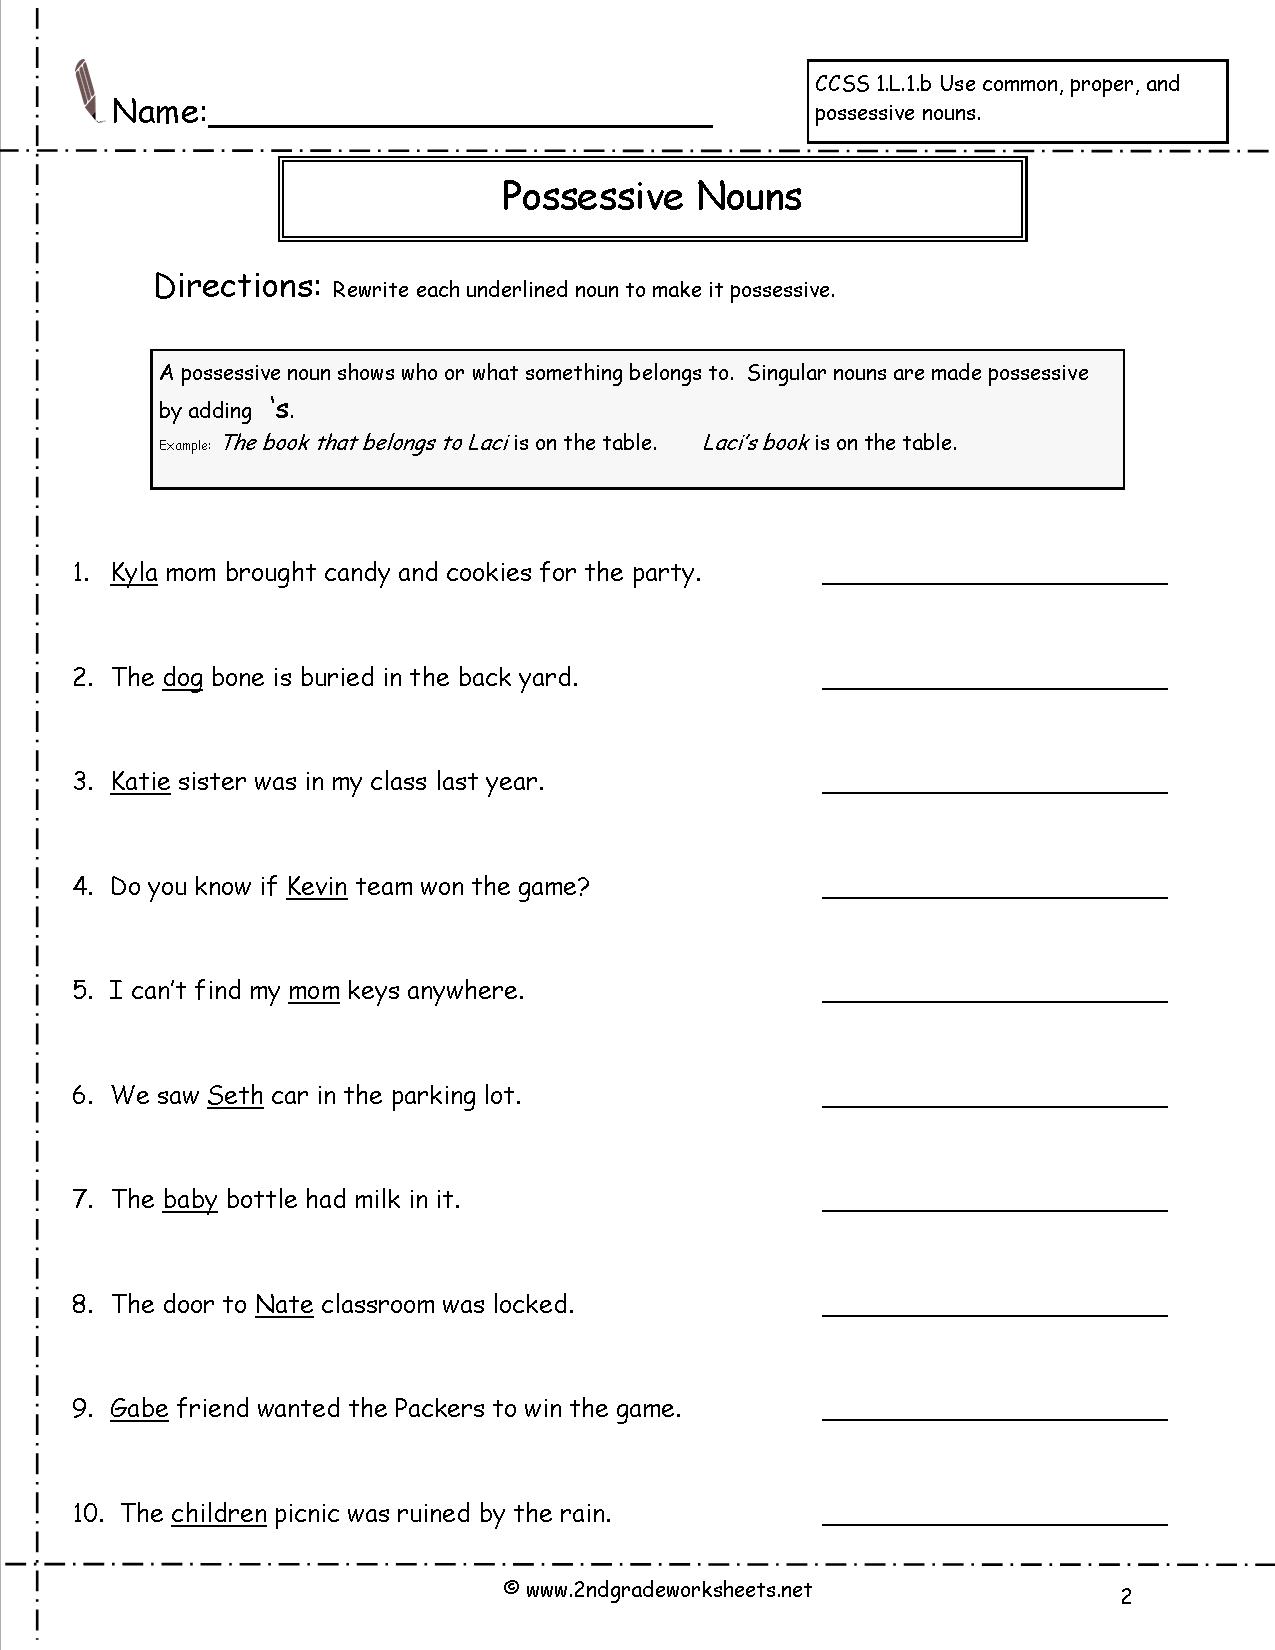 15 Possessive Nouns Worksheets 5th Grade Worksheeto